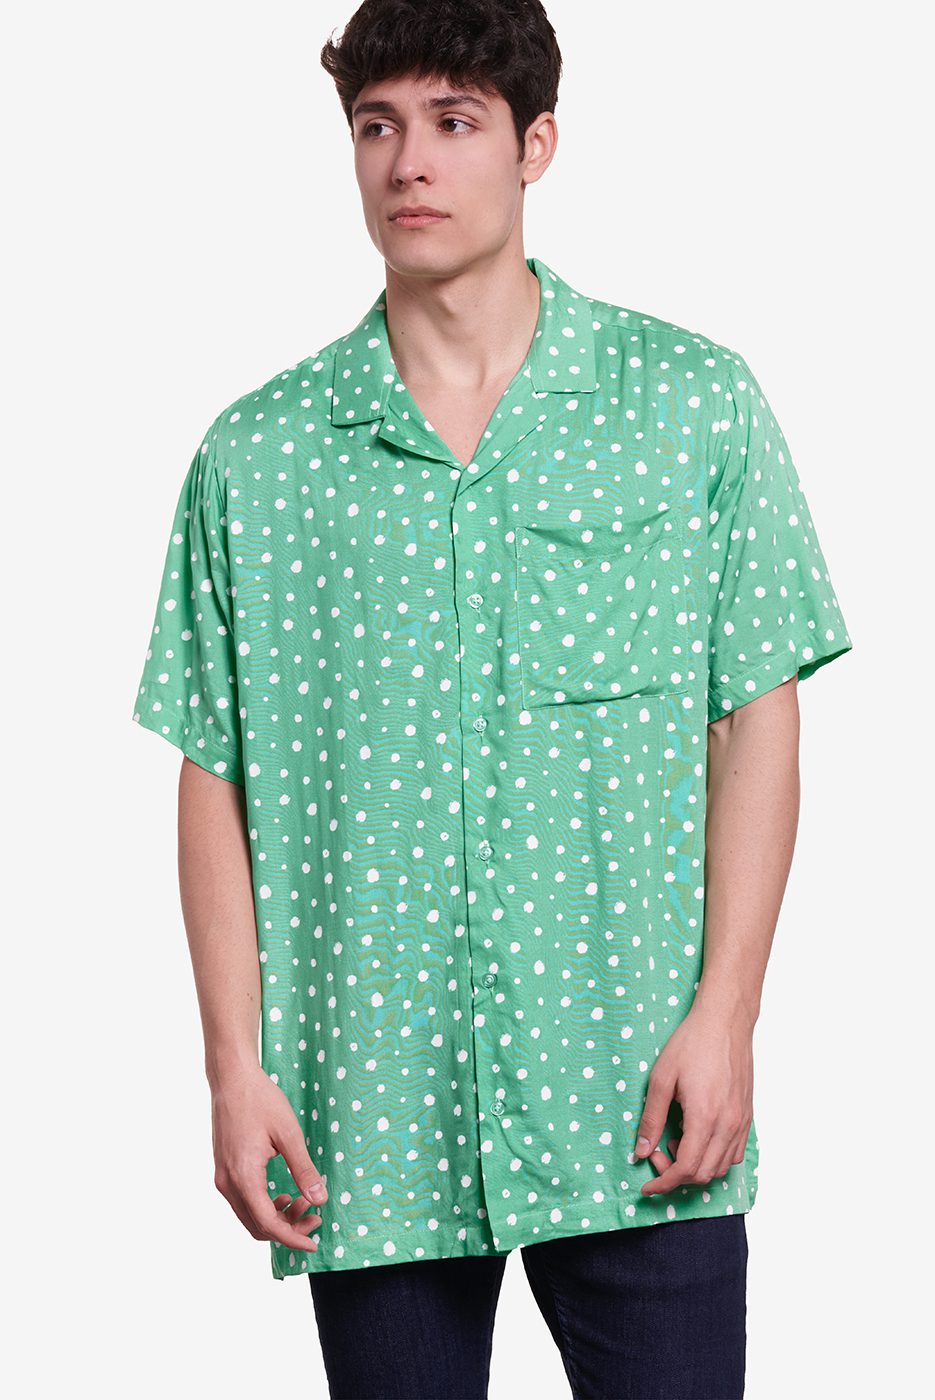 Camisa verde con lunares blancoos pensada para hombre y mujer.